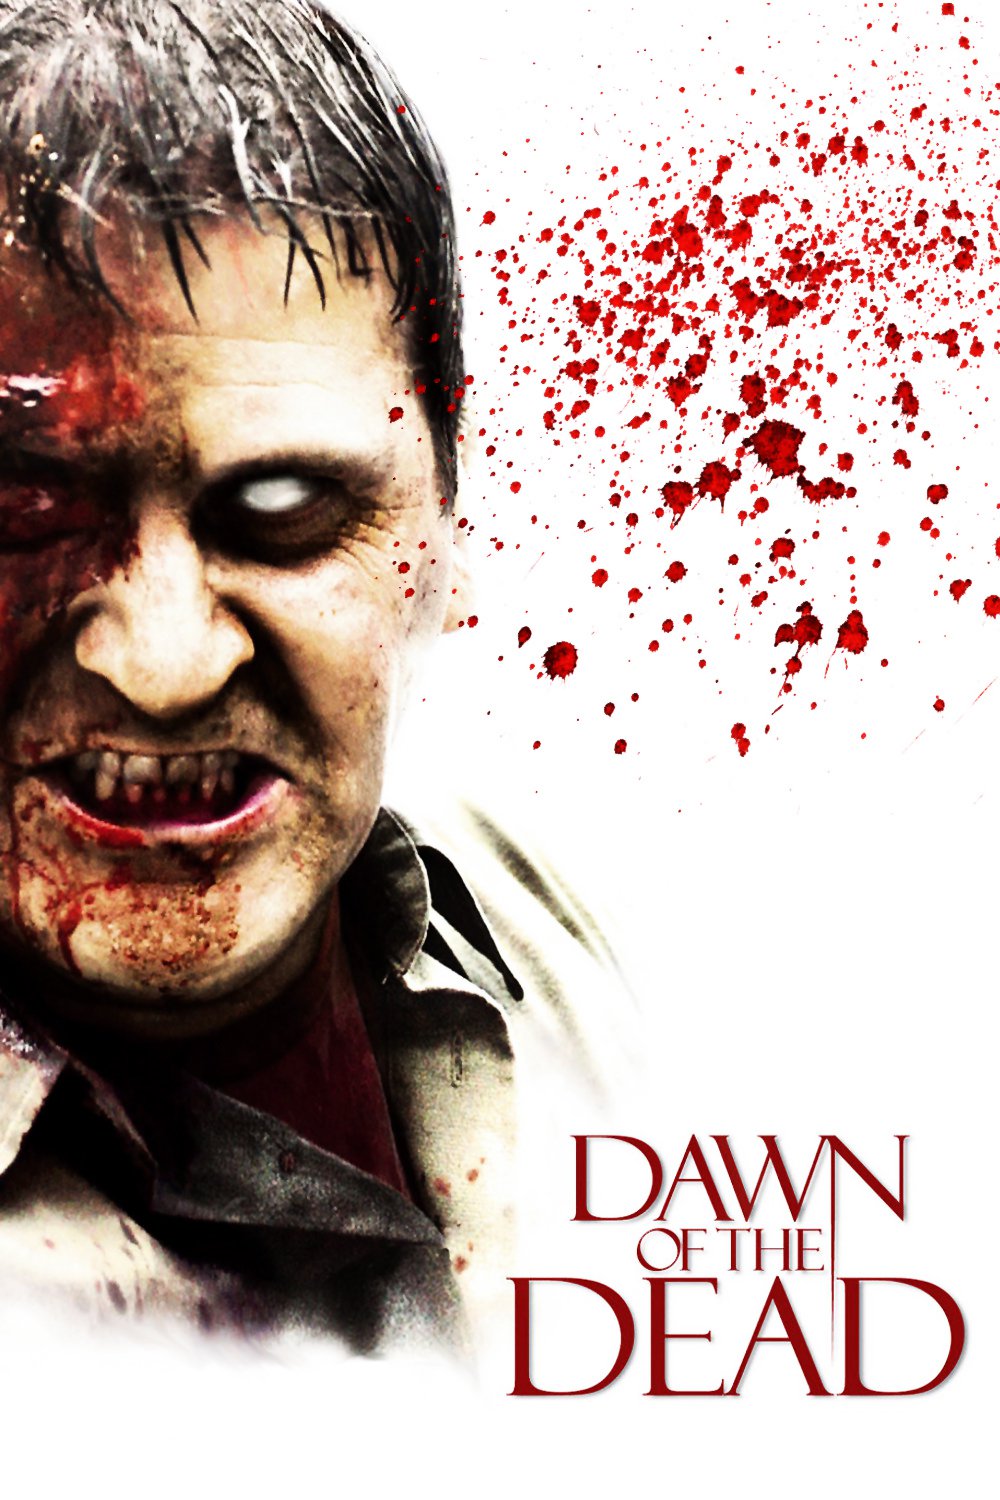 Plakat von "Dawn of the Dead"